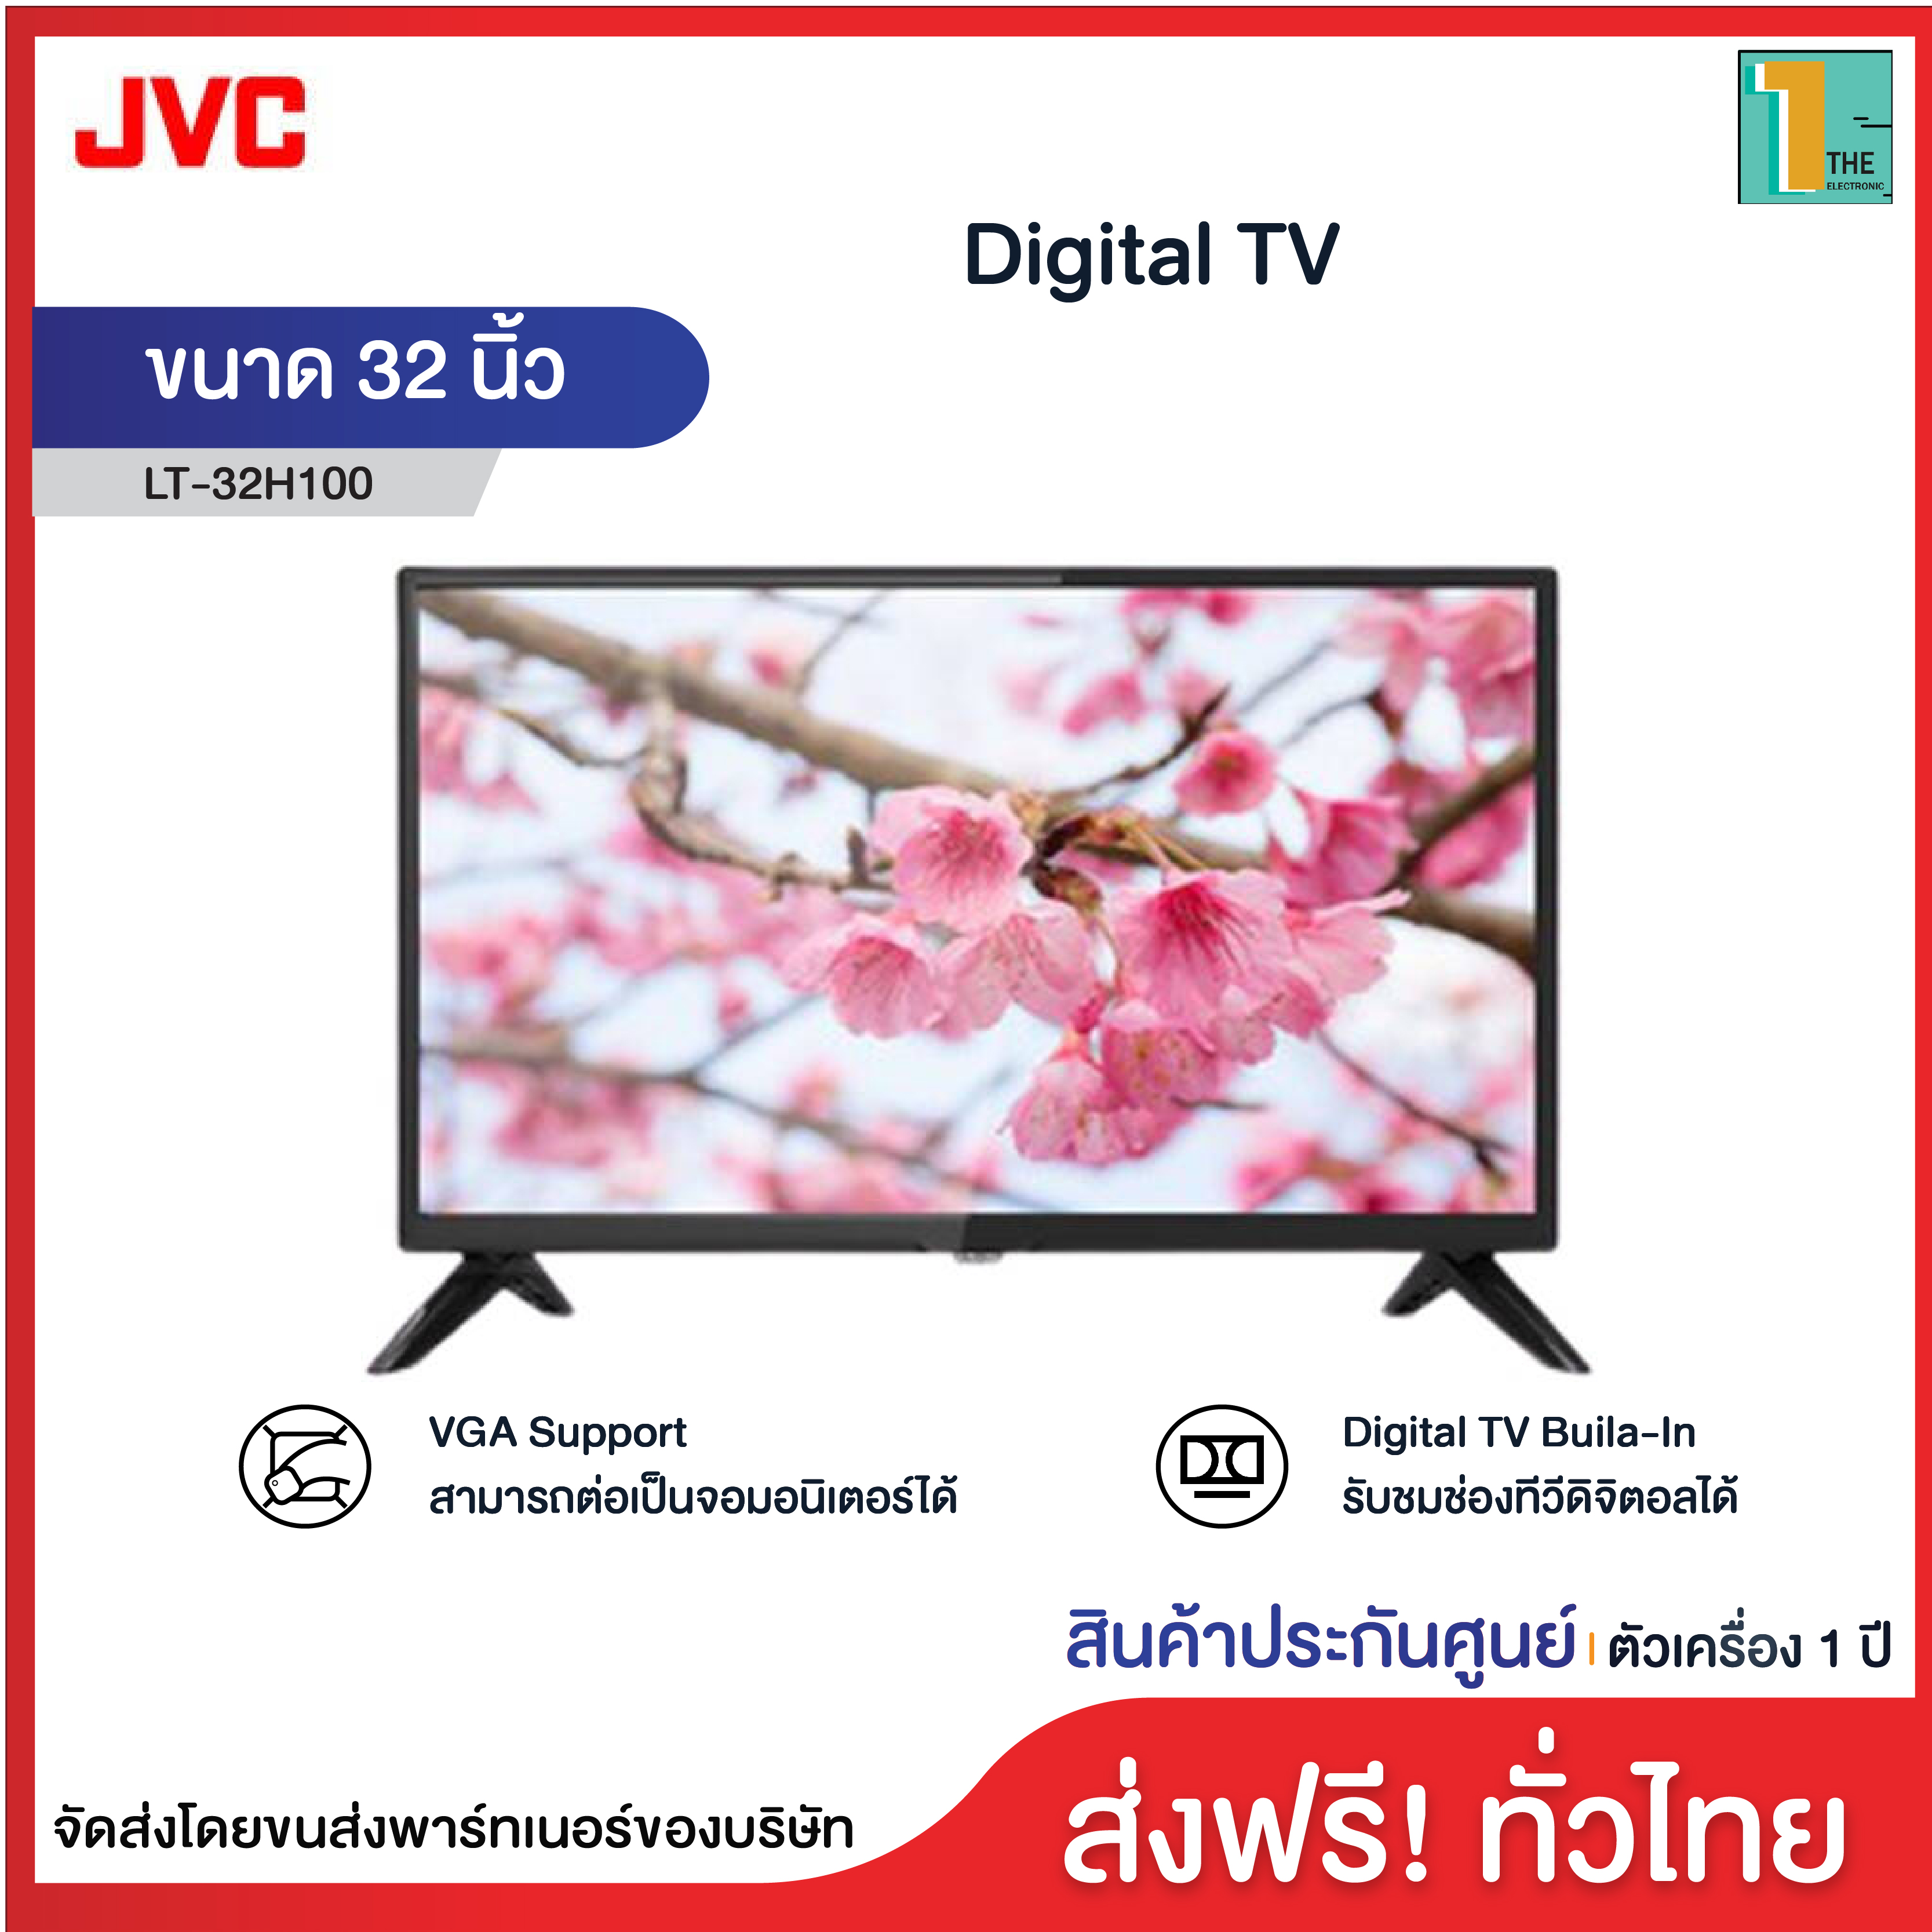 JVC ดิจิตอลทีวี LED TV รุ่น LT-32H100 ขนาด 32 นิ้ว ประกันศูนย์ 1 ปี สามารถต่อเป็นจอมอนิเตอร์ได้